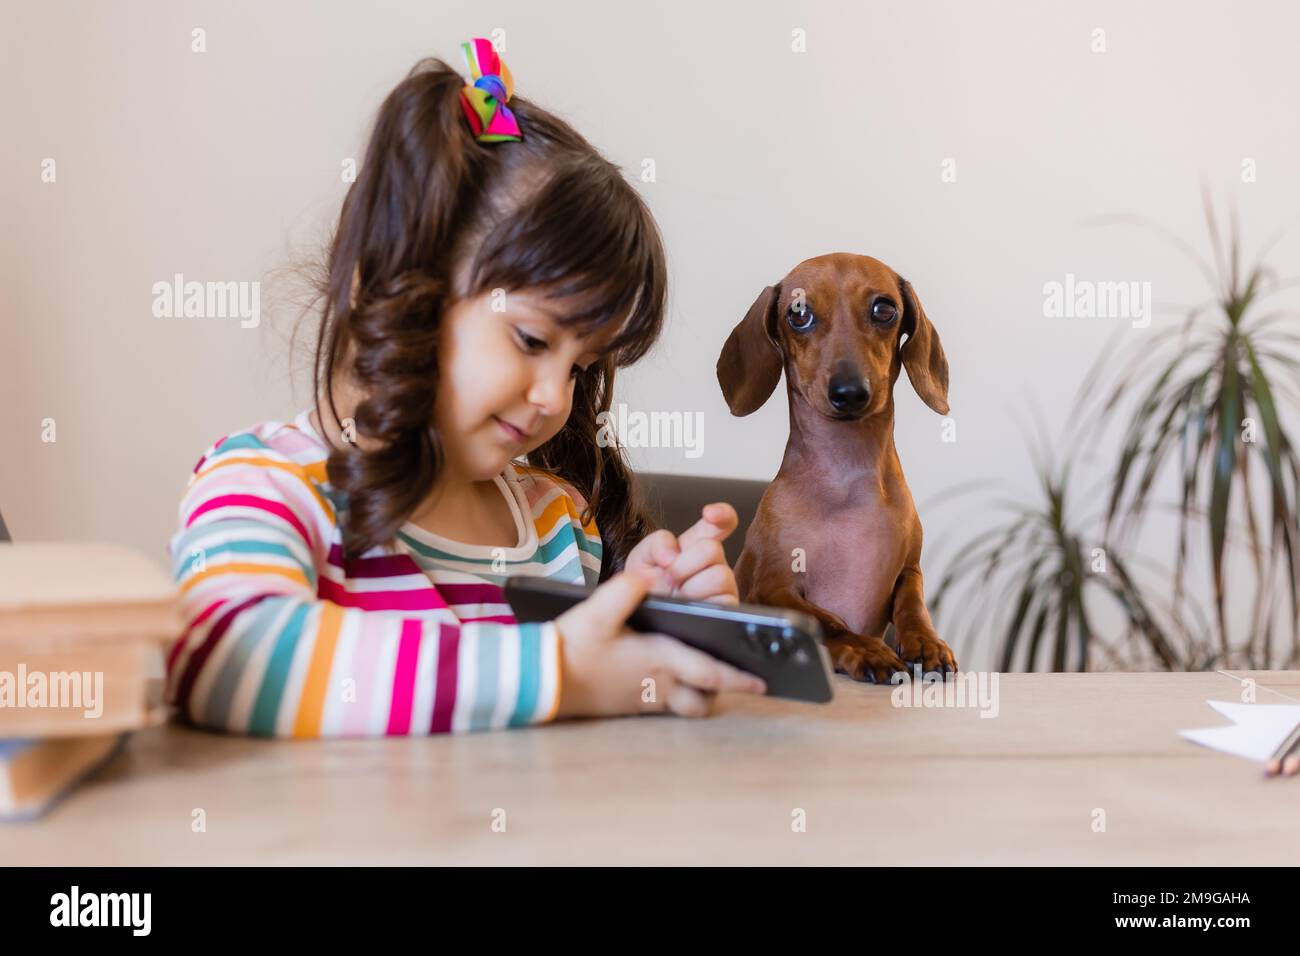 una bambina felice sta guardando il telefono con un piccolo cane dachshund. Istruzione prescolare. Bambini e animali Foto Stock